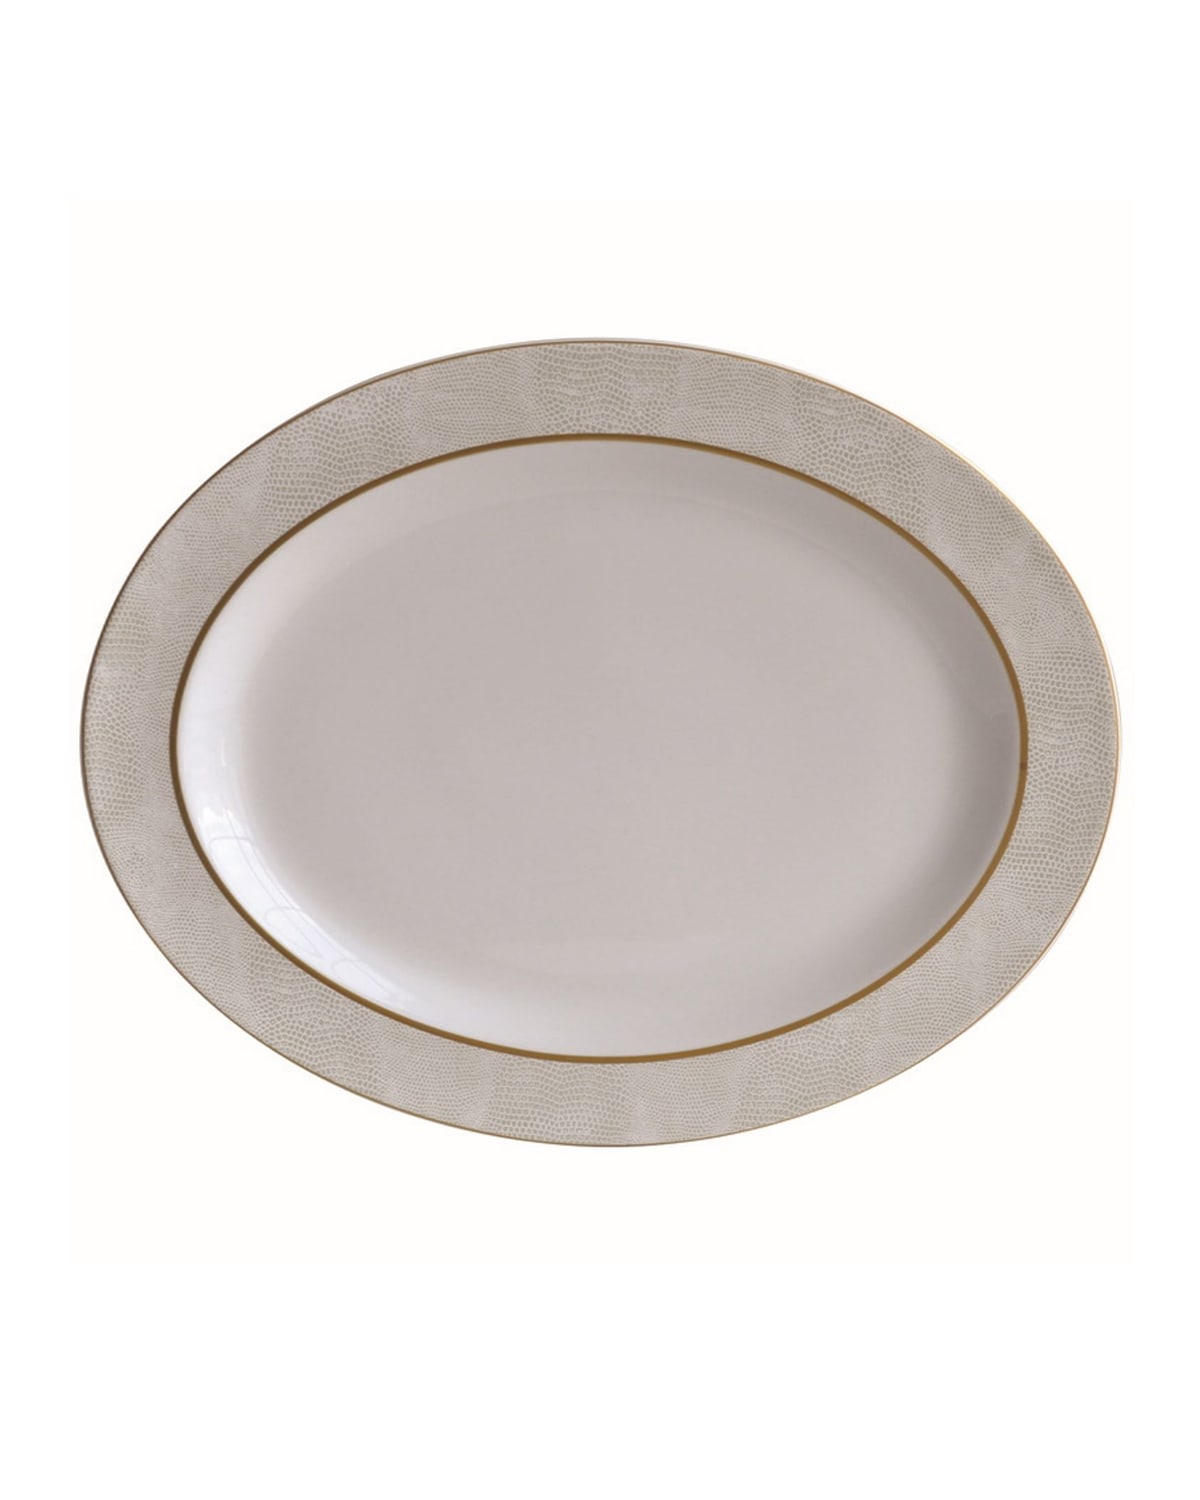 Shop Bernardaud Sauvage White Oval Platter, 13"